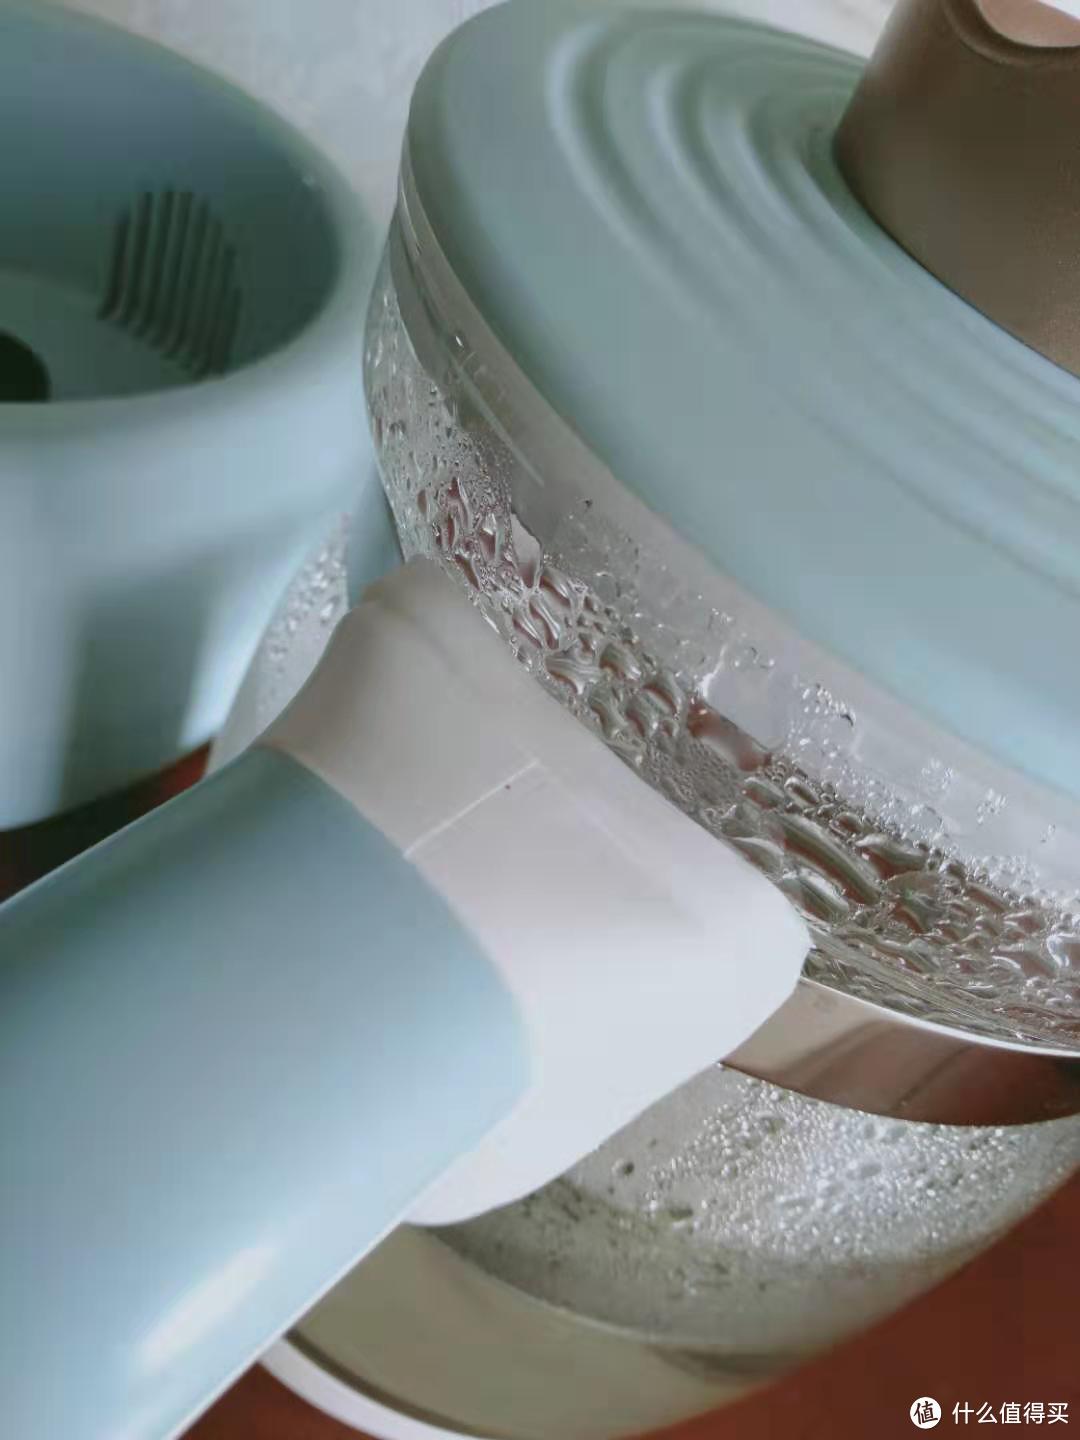 功能简单实用的家用温水（奶）器——美的皇冠Plus调奶器众测报告